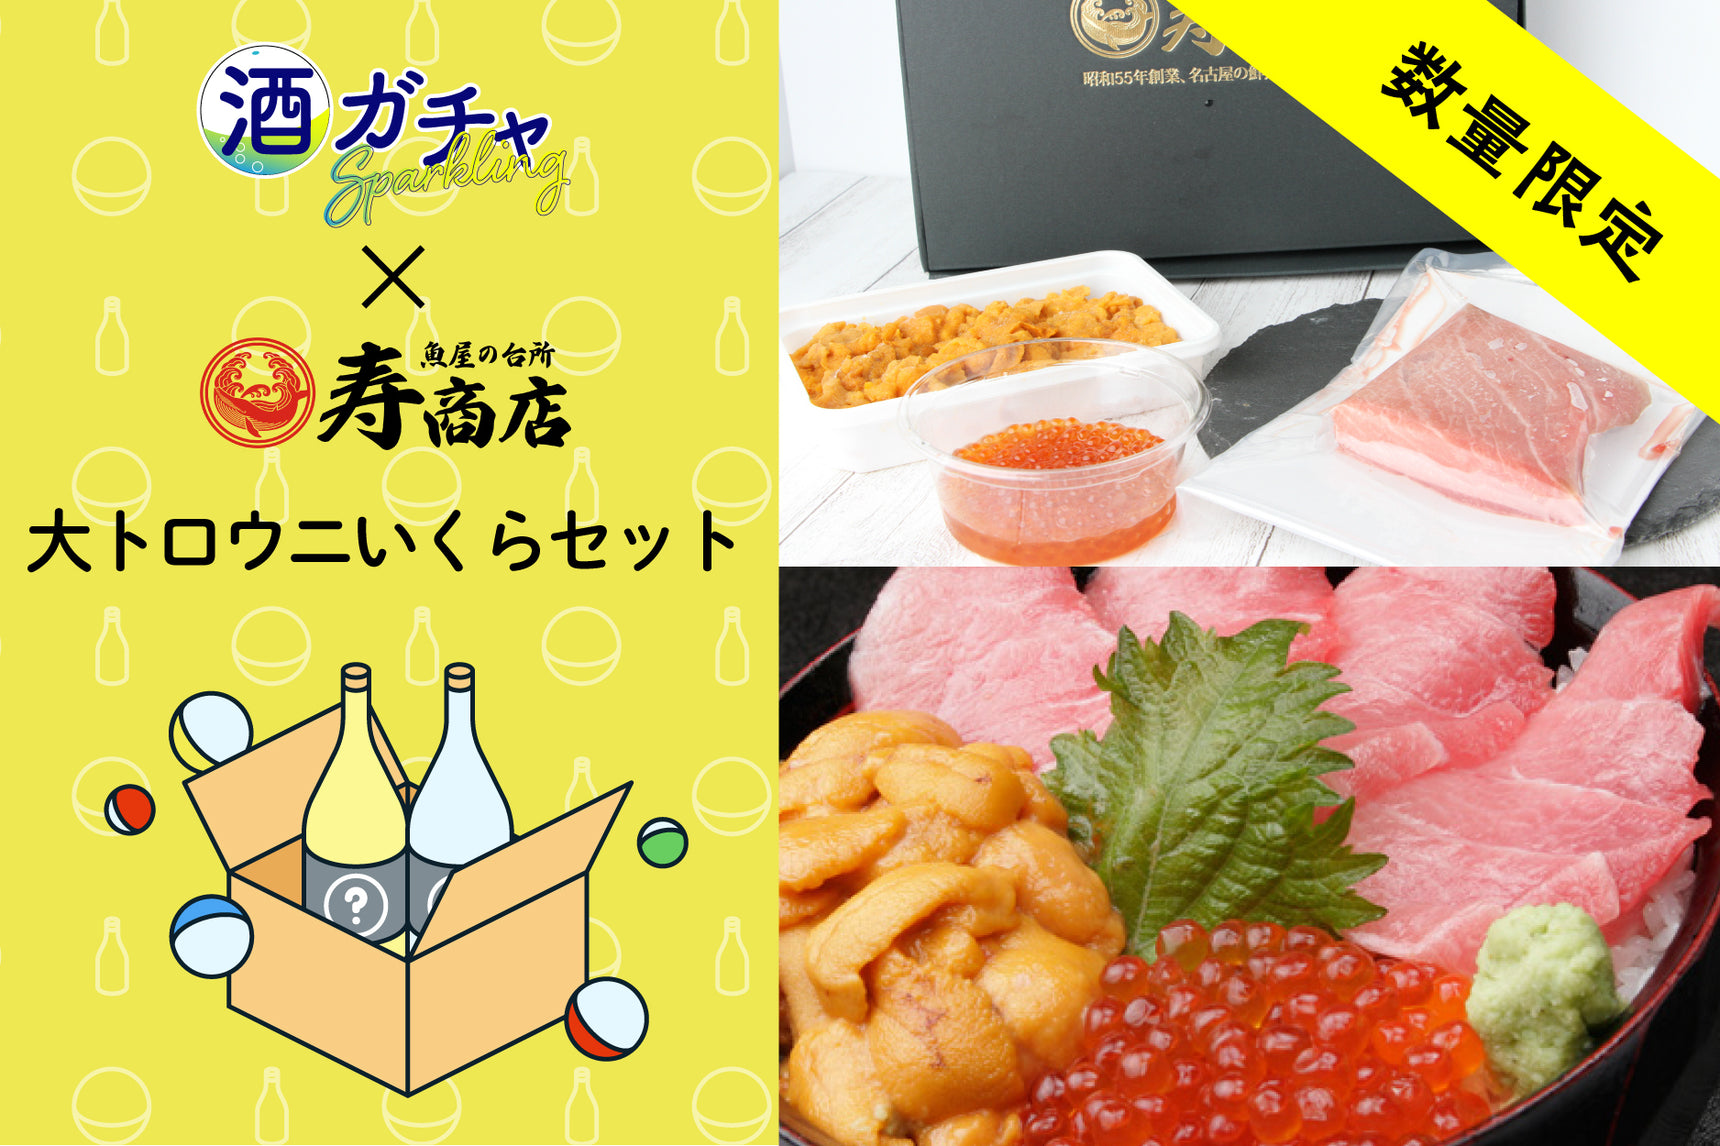 【限定50食】ごちそうコラボ酒ガチャ -寿商店-【大トロウニいくらセット】